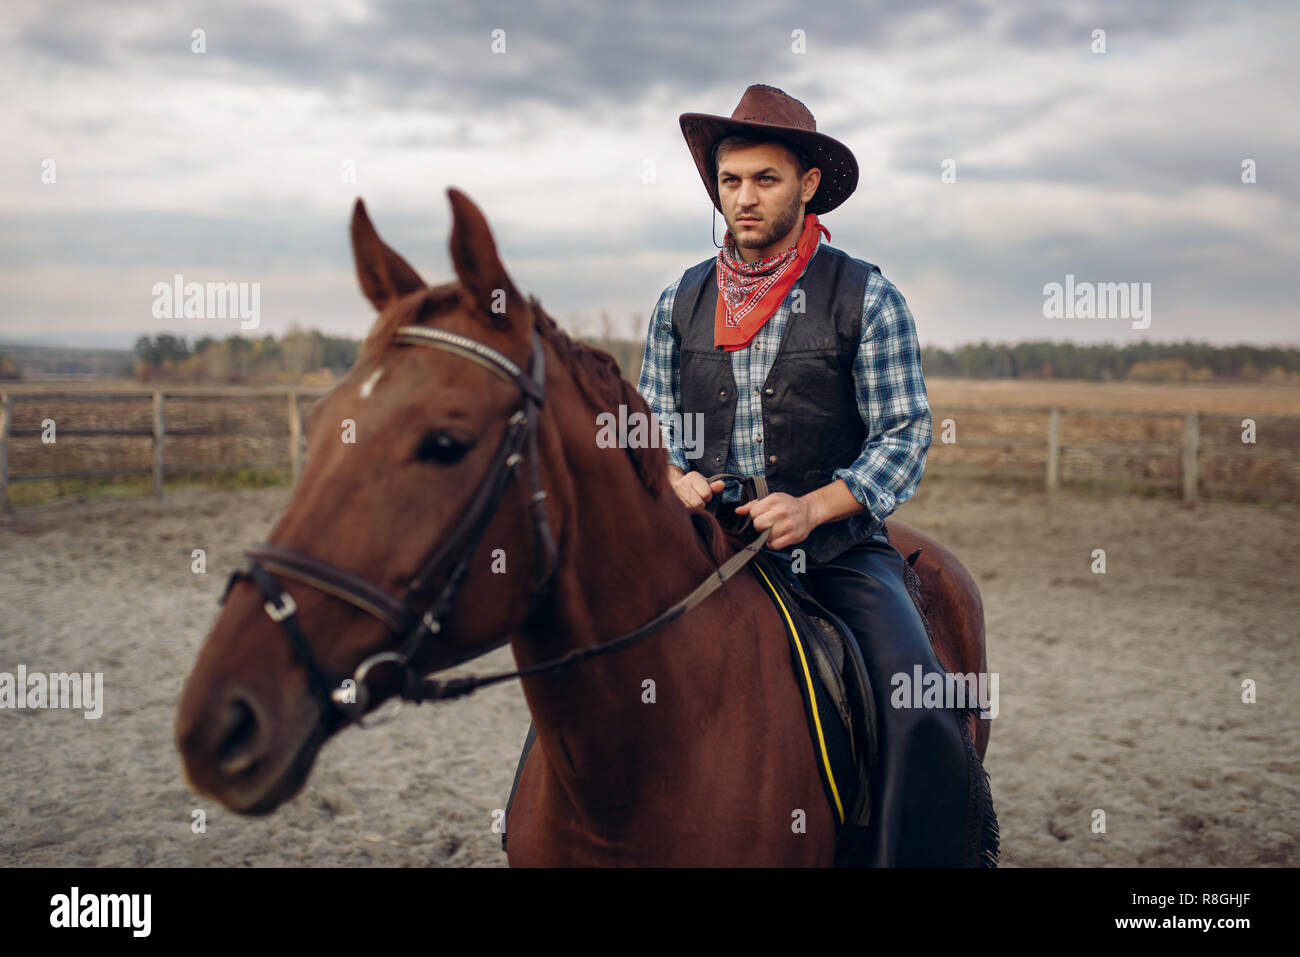 Cowboy in Leder kleidung ein Pferd Reiten auf dem Bauernhof, Western.  Vintage männliche Person auf dem Pferd, die amerikanische Kultur  Stockfotografie - Alamy